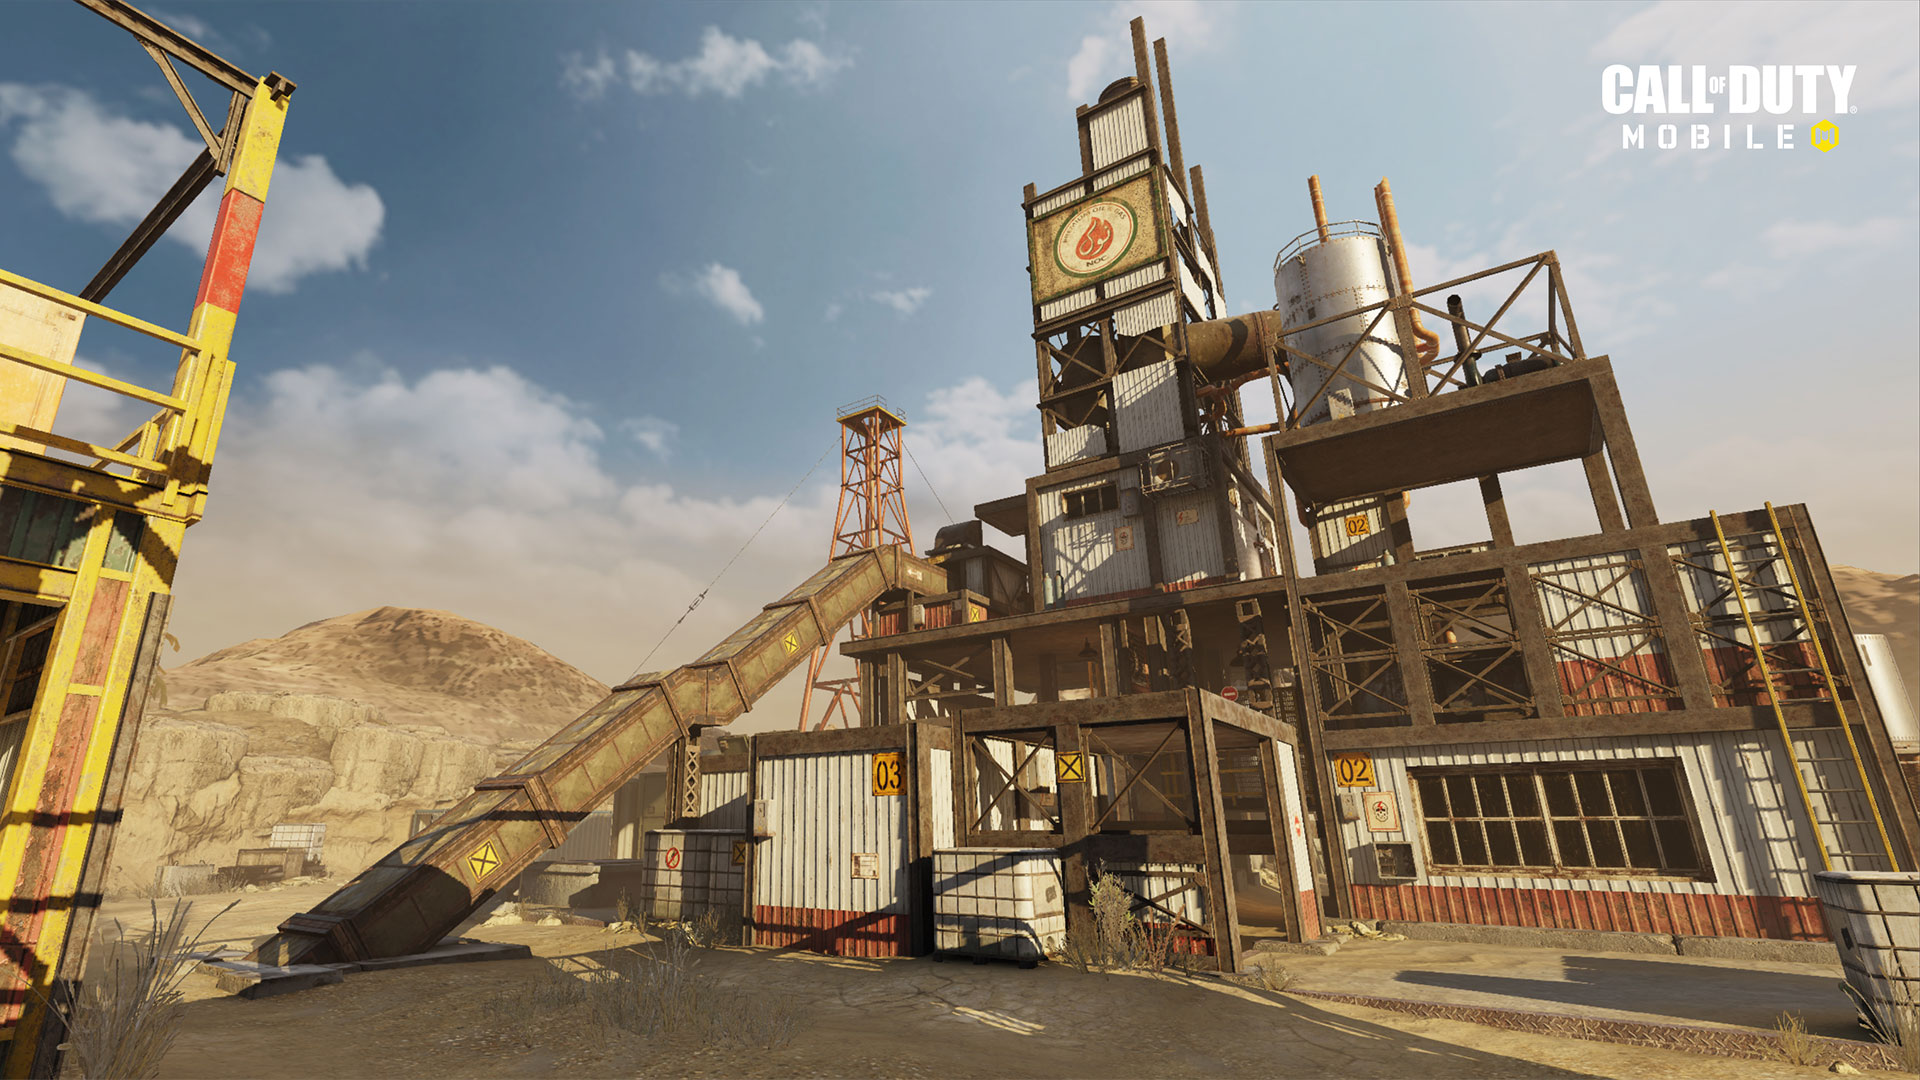 الإصدار 1.0.12 من "Call of Duty: Mobile" متاح الآن بشكل مباشر لتقديم الدعم للموسم التالي "ذات مرة في الصدأ" ، وخرائط جديدة ، وموسم جديد مصنّف ، والمزيد 6